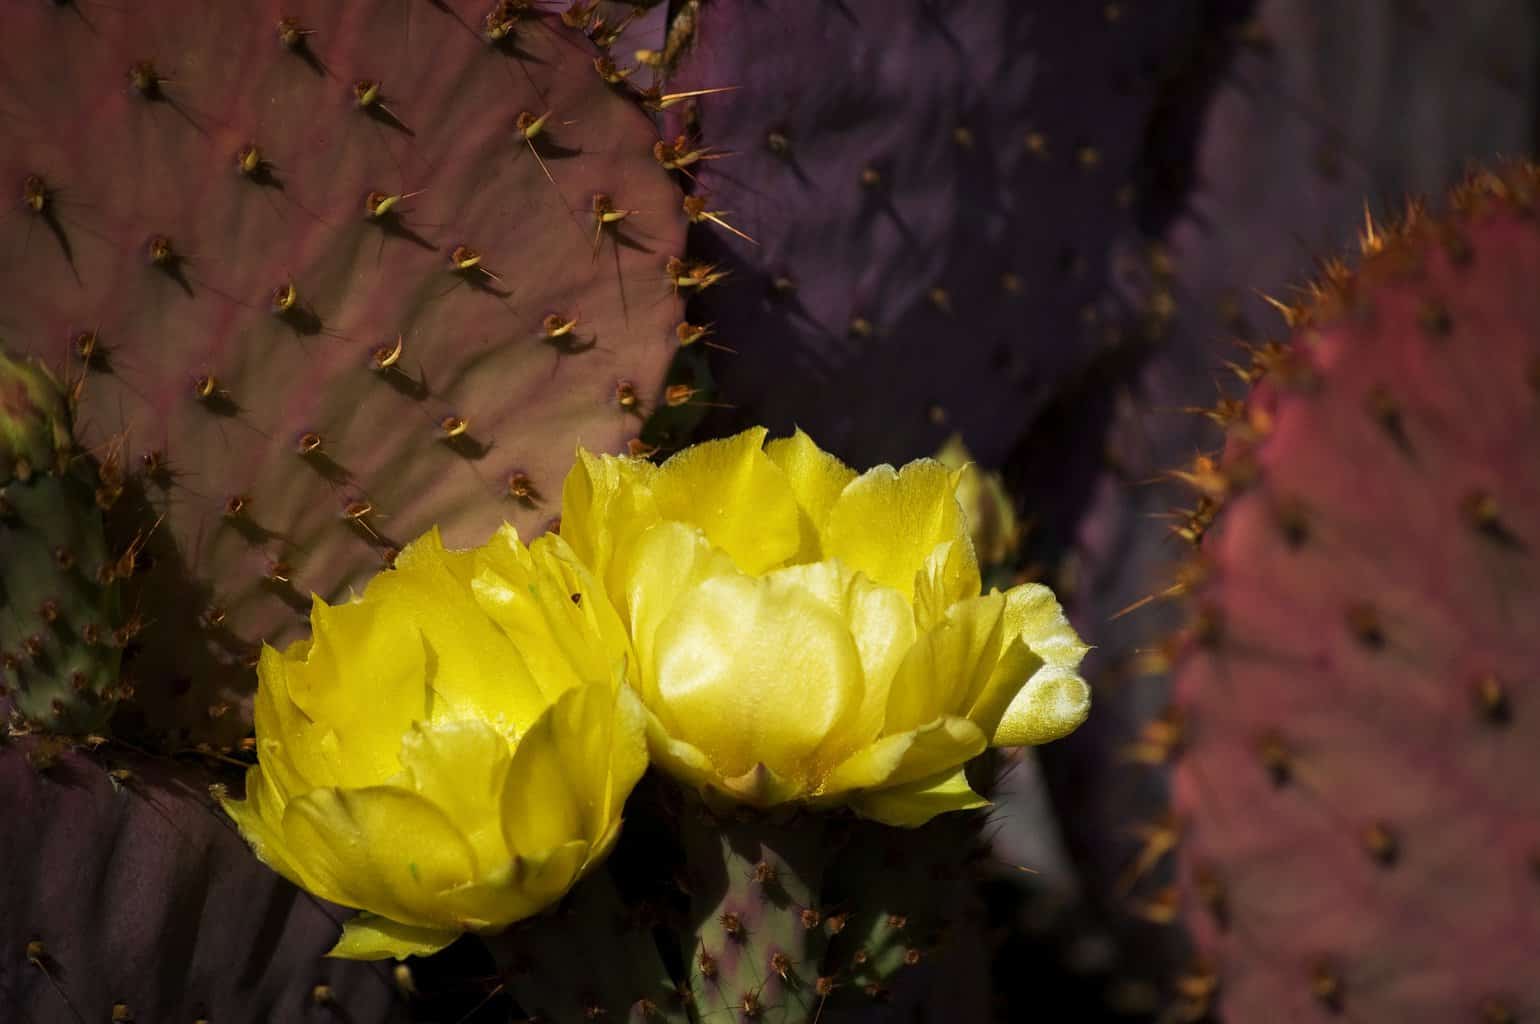 Opunta Santa Rita prickly pear cactus